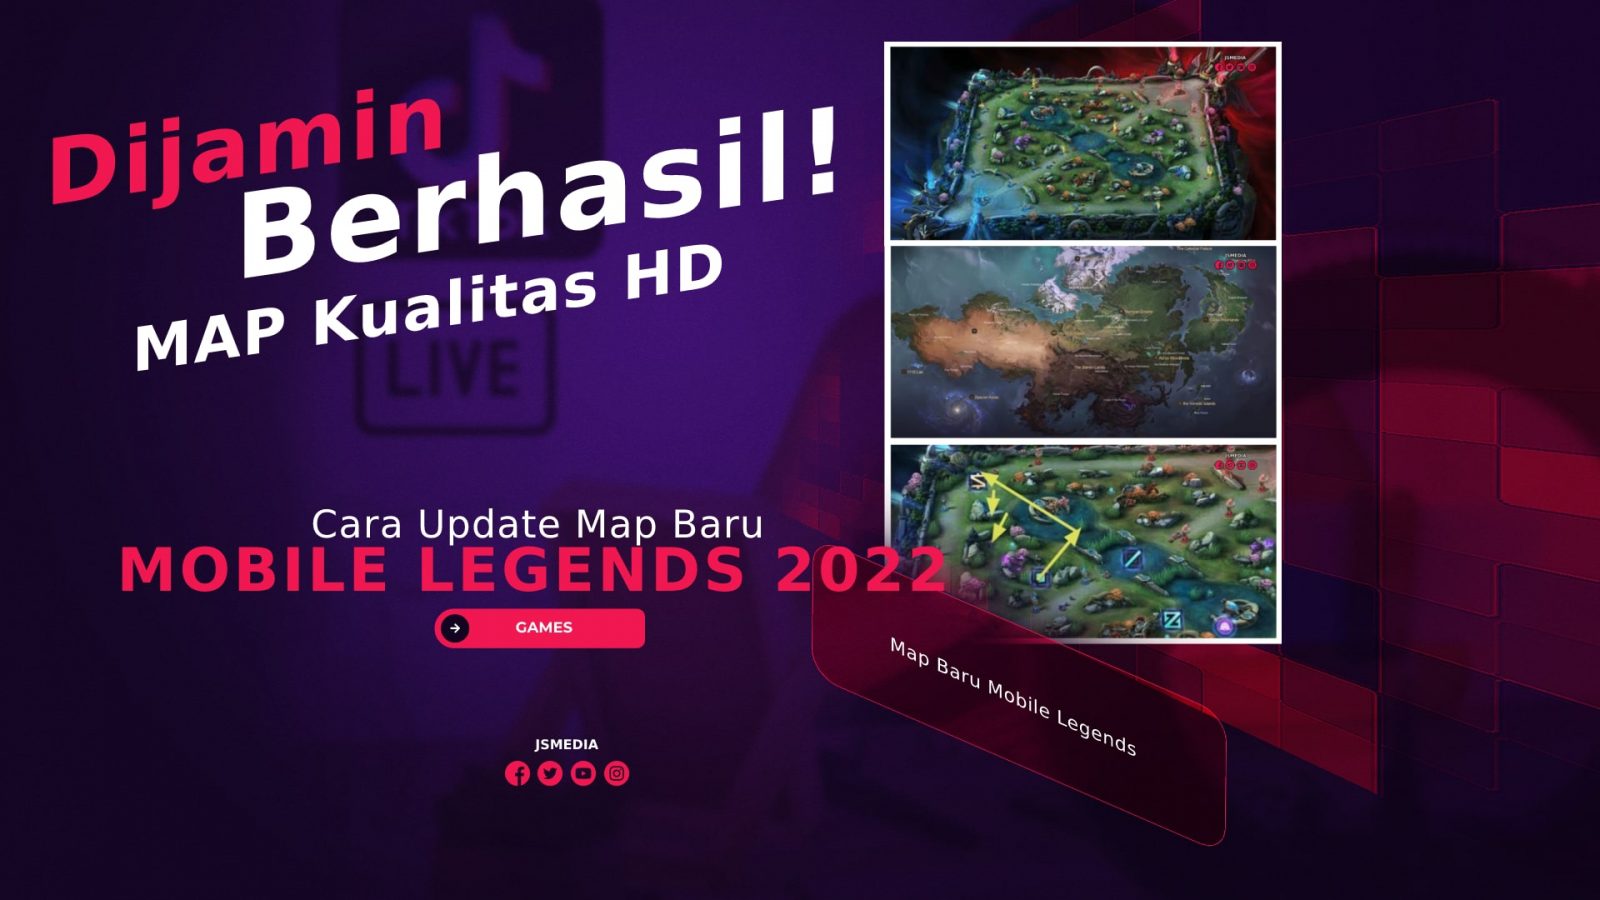 Cara Update Map Baru Mobile Legends 2022: Dijamin Berhasil!